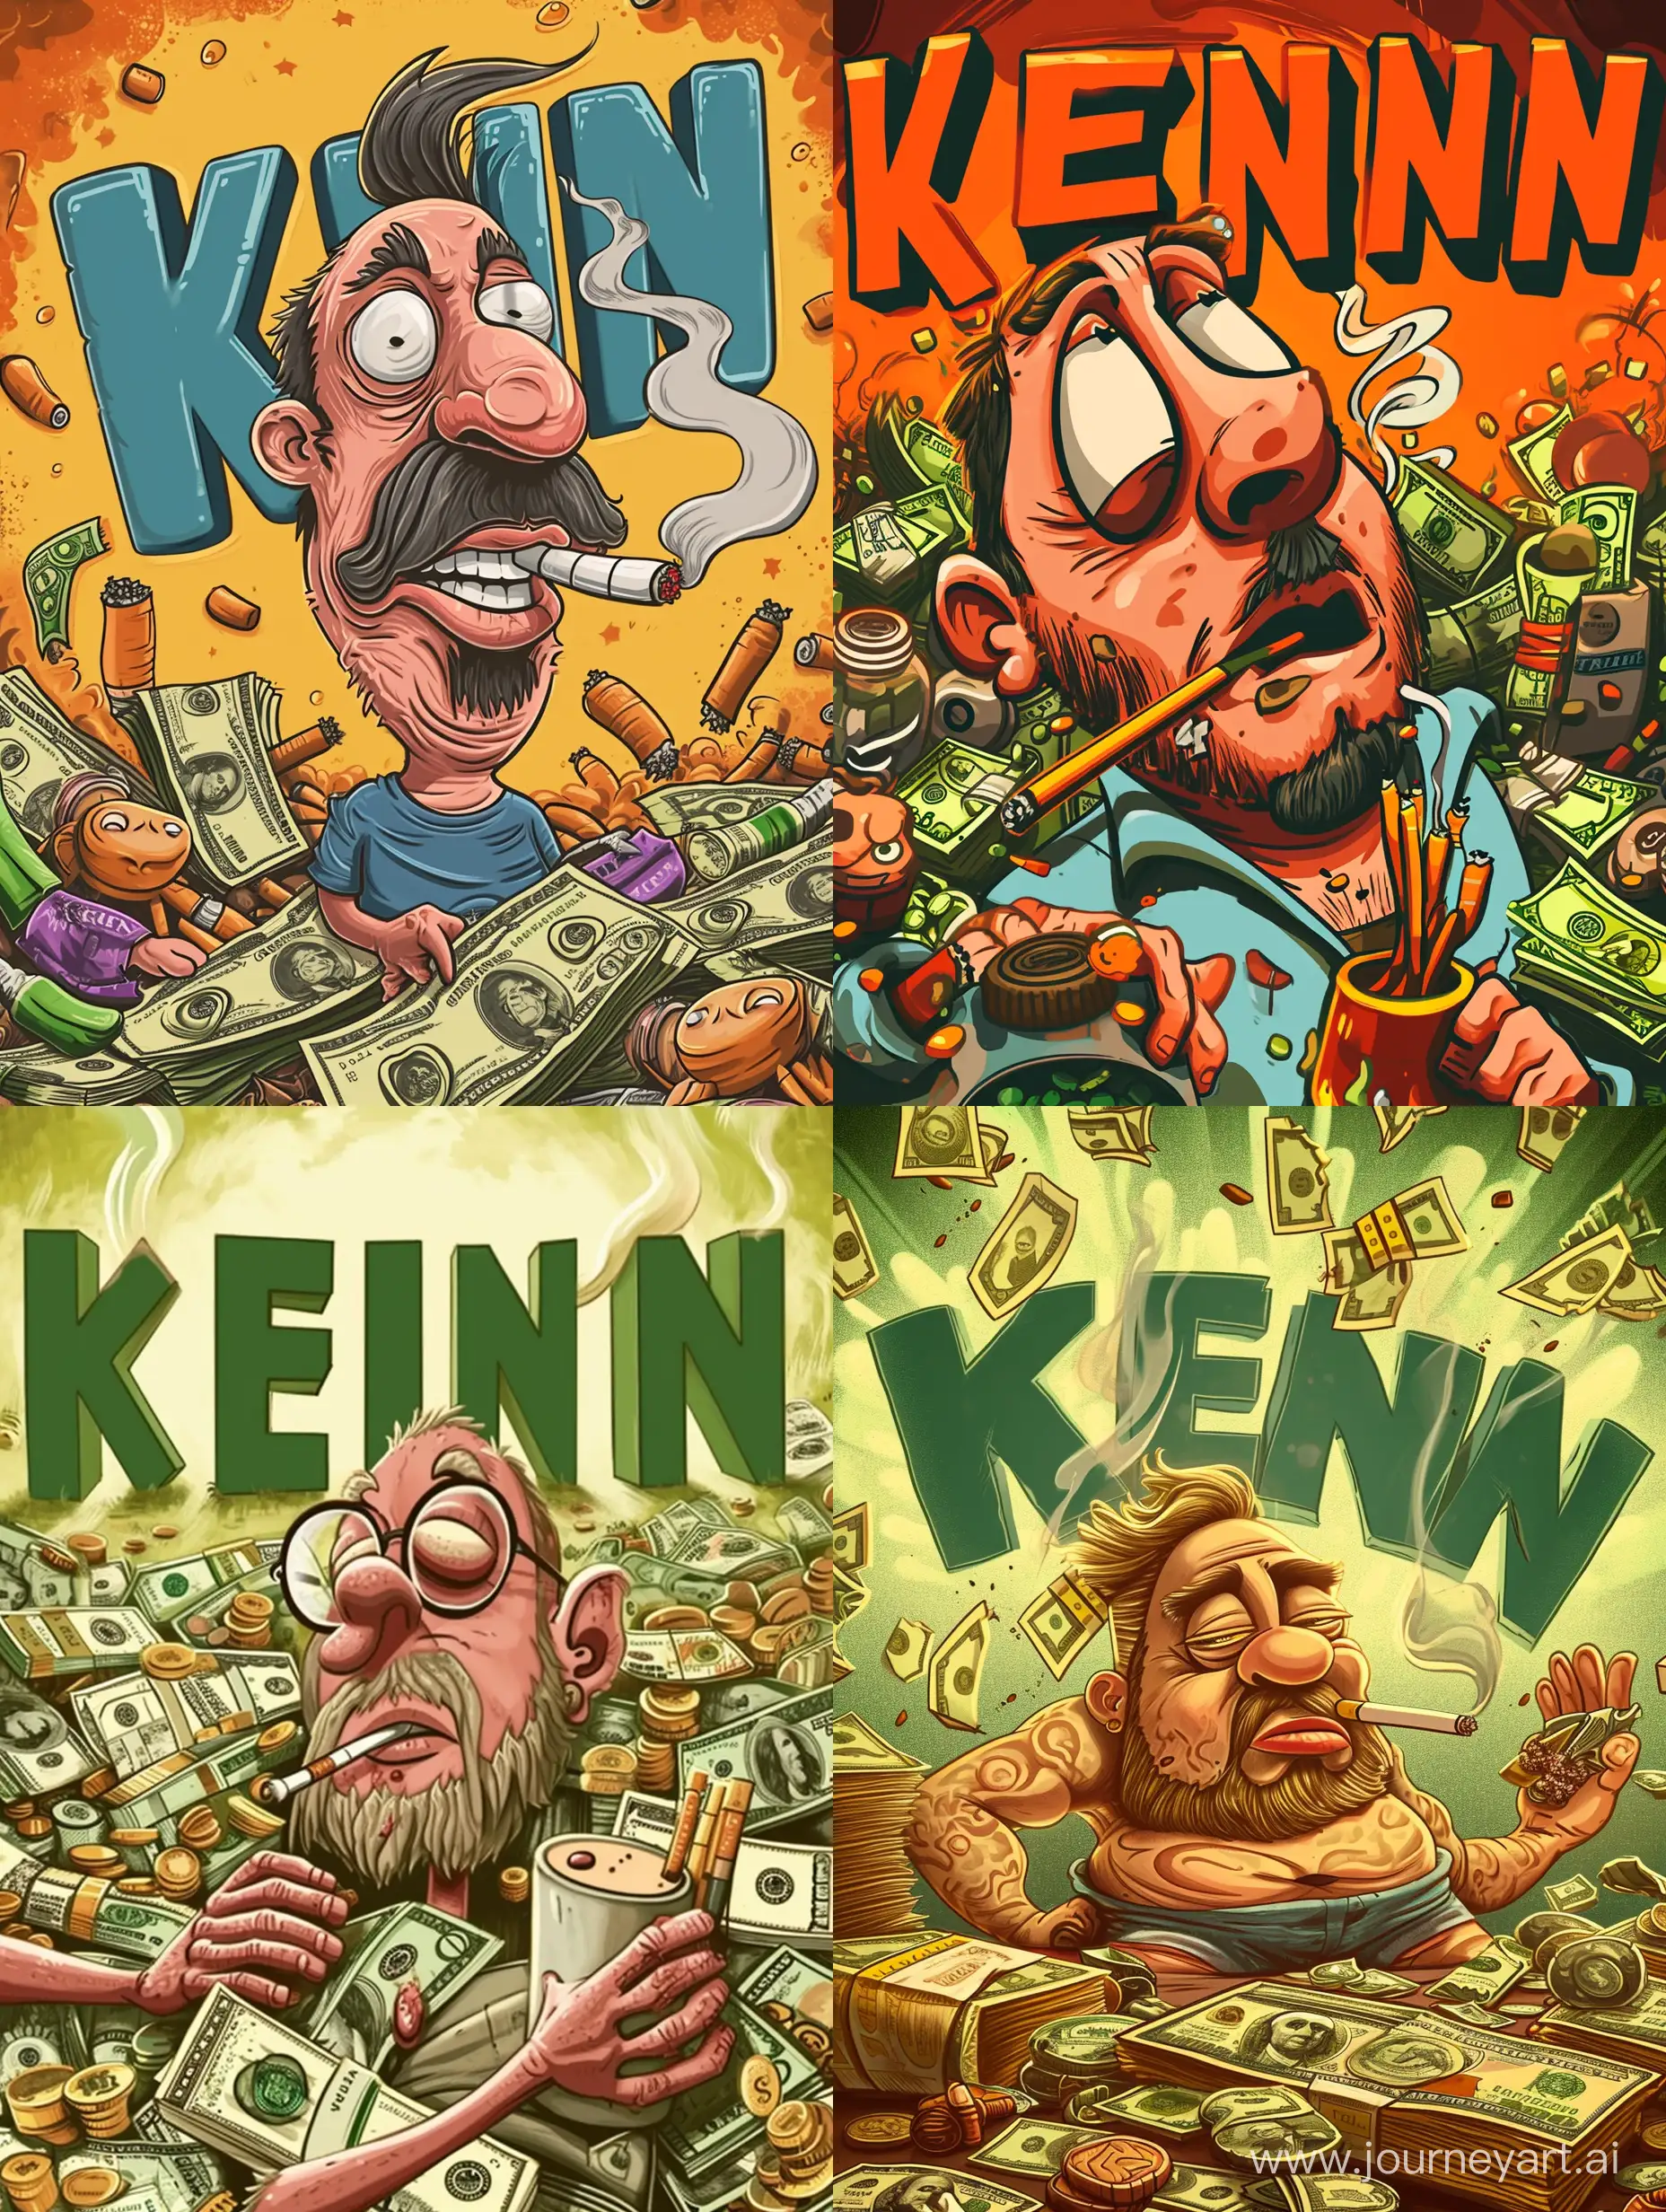 картинка с курящим персонажем, много денег, фон большие буквы "Kevin"